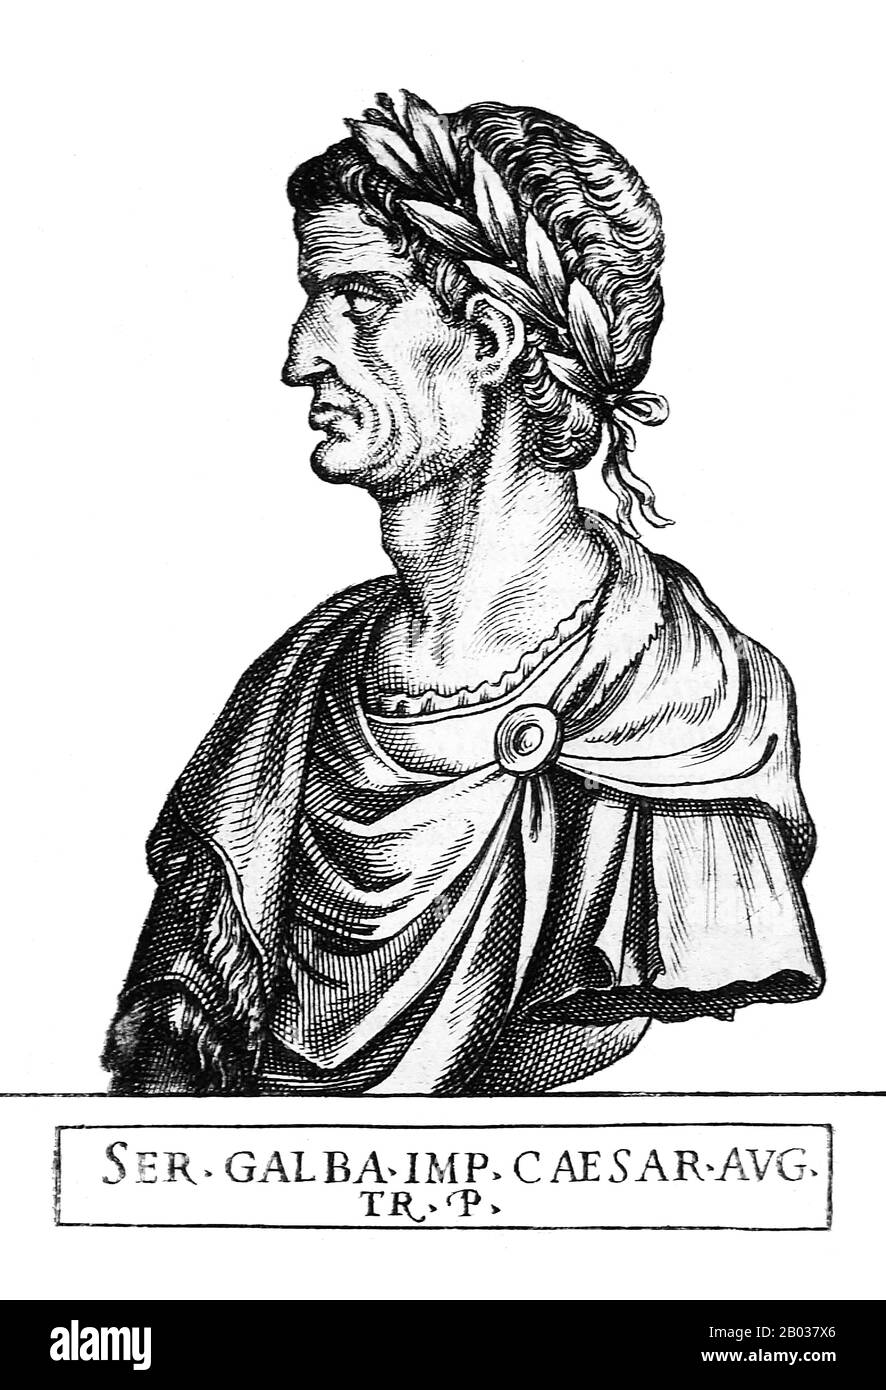 Né Servius Sulpicius Galba, Galba est venu d'une famille noble et riche, bien qu'il n'ait pas de connexion à la naissance et seulement d'une connexion très éloignée par adoption à l'une des dynasties Julio-Claudian. Refusant l'encouragement des amis à faire une offre pour l'empire après l'assassinat de Caligula, Galba a loyalement servi Claudius, et a vécu pour la plupart du règne de Nero en retraite. Cependant, en 68 ce, il a été informé de l'intention de Nero de le faire tuer, et il a fait défection de Nero pour se sauver. Après le suicide de Nero, Galba a été nommé César et tué de nombreux soldats sur son approche de Rome pour faire dem Banque D'Images